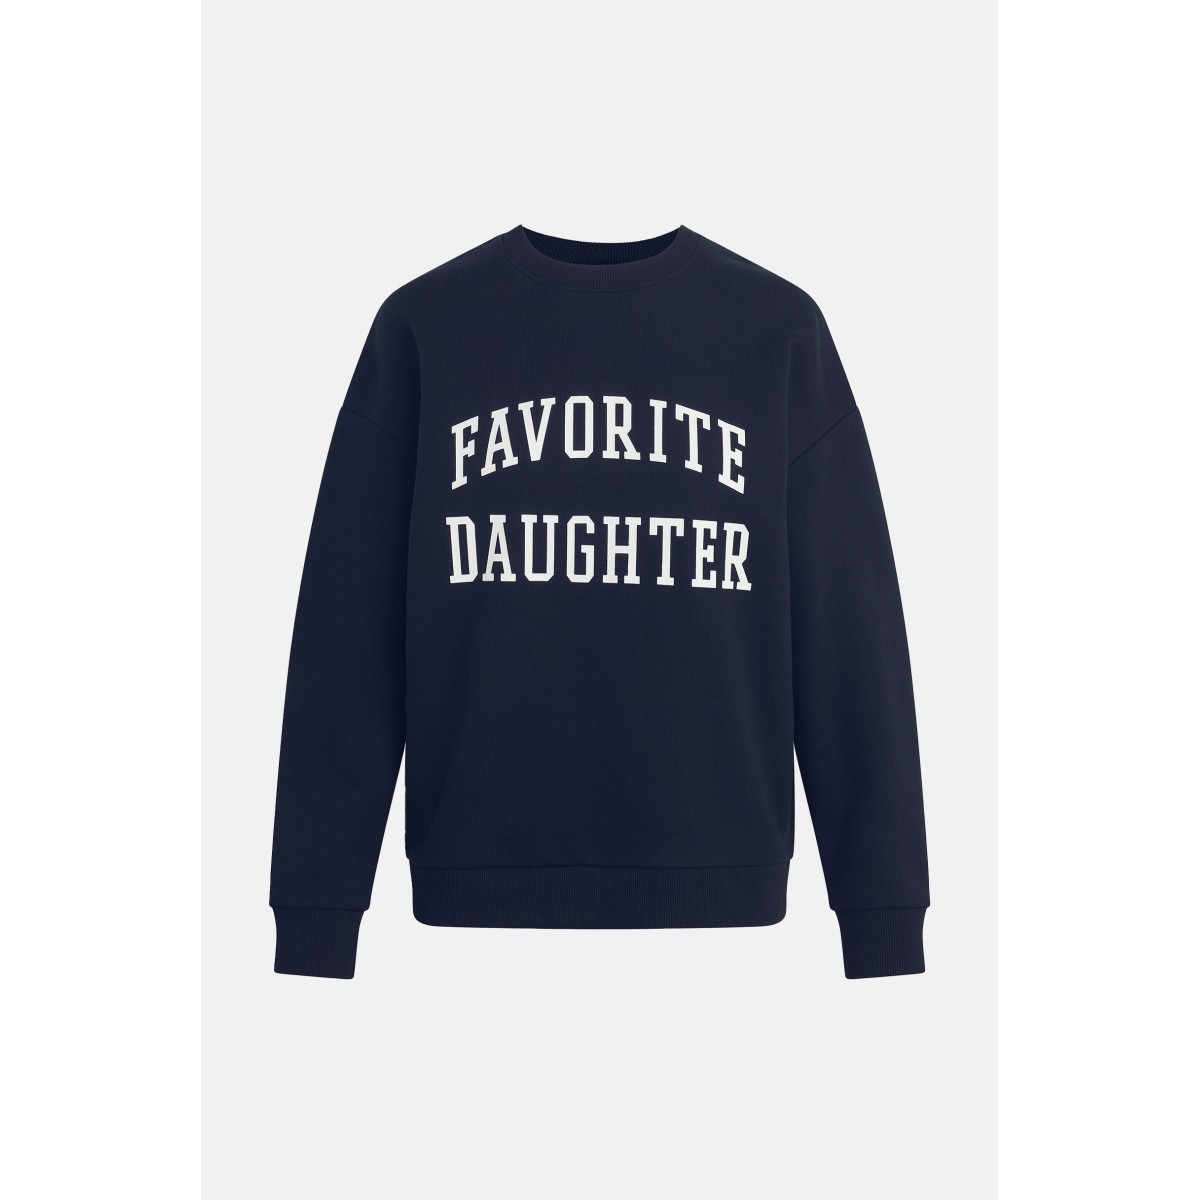 Sweatshirt "Favorite Daughter" Favorite Daughter